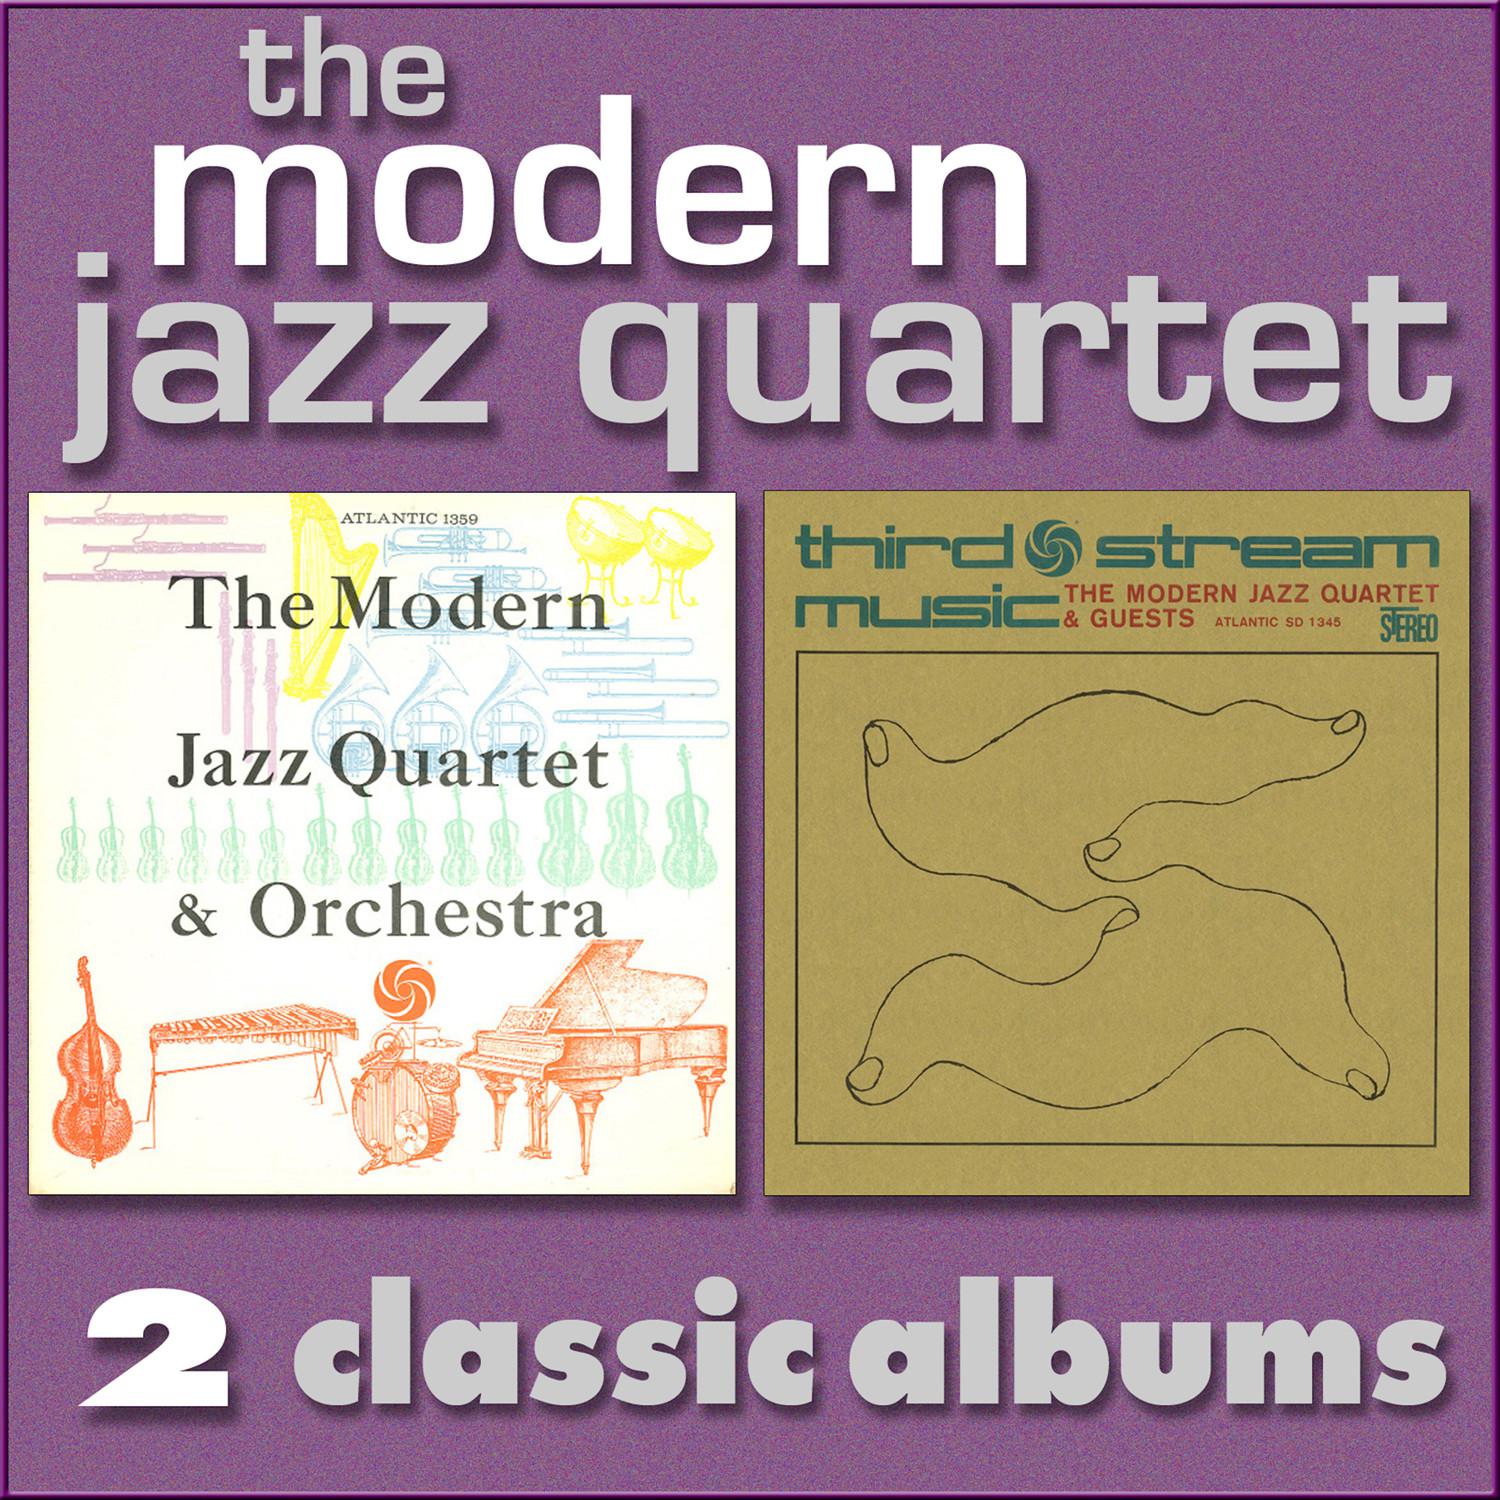 The Modern Jazz Quartet and Orchestra / Third Stream Music